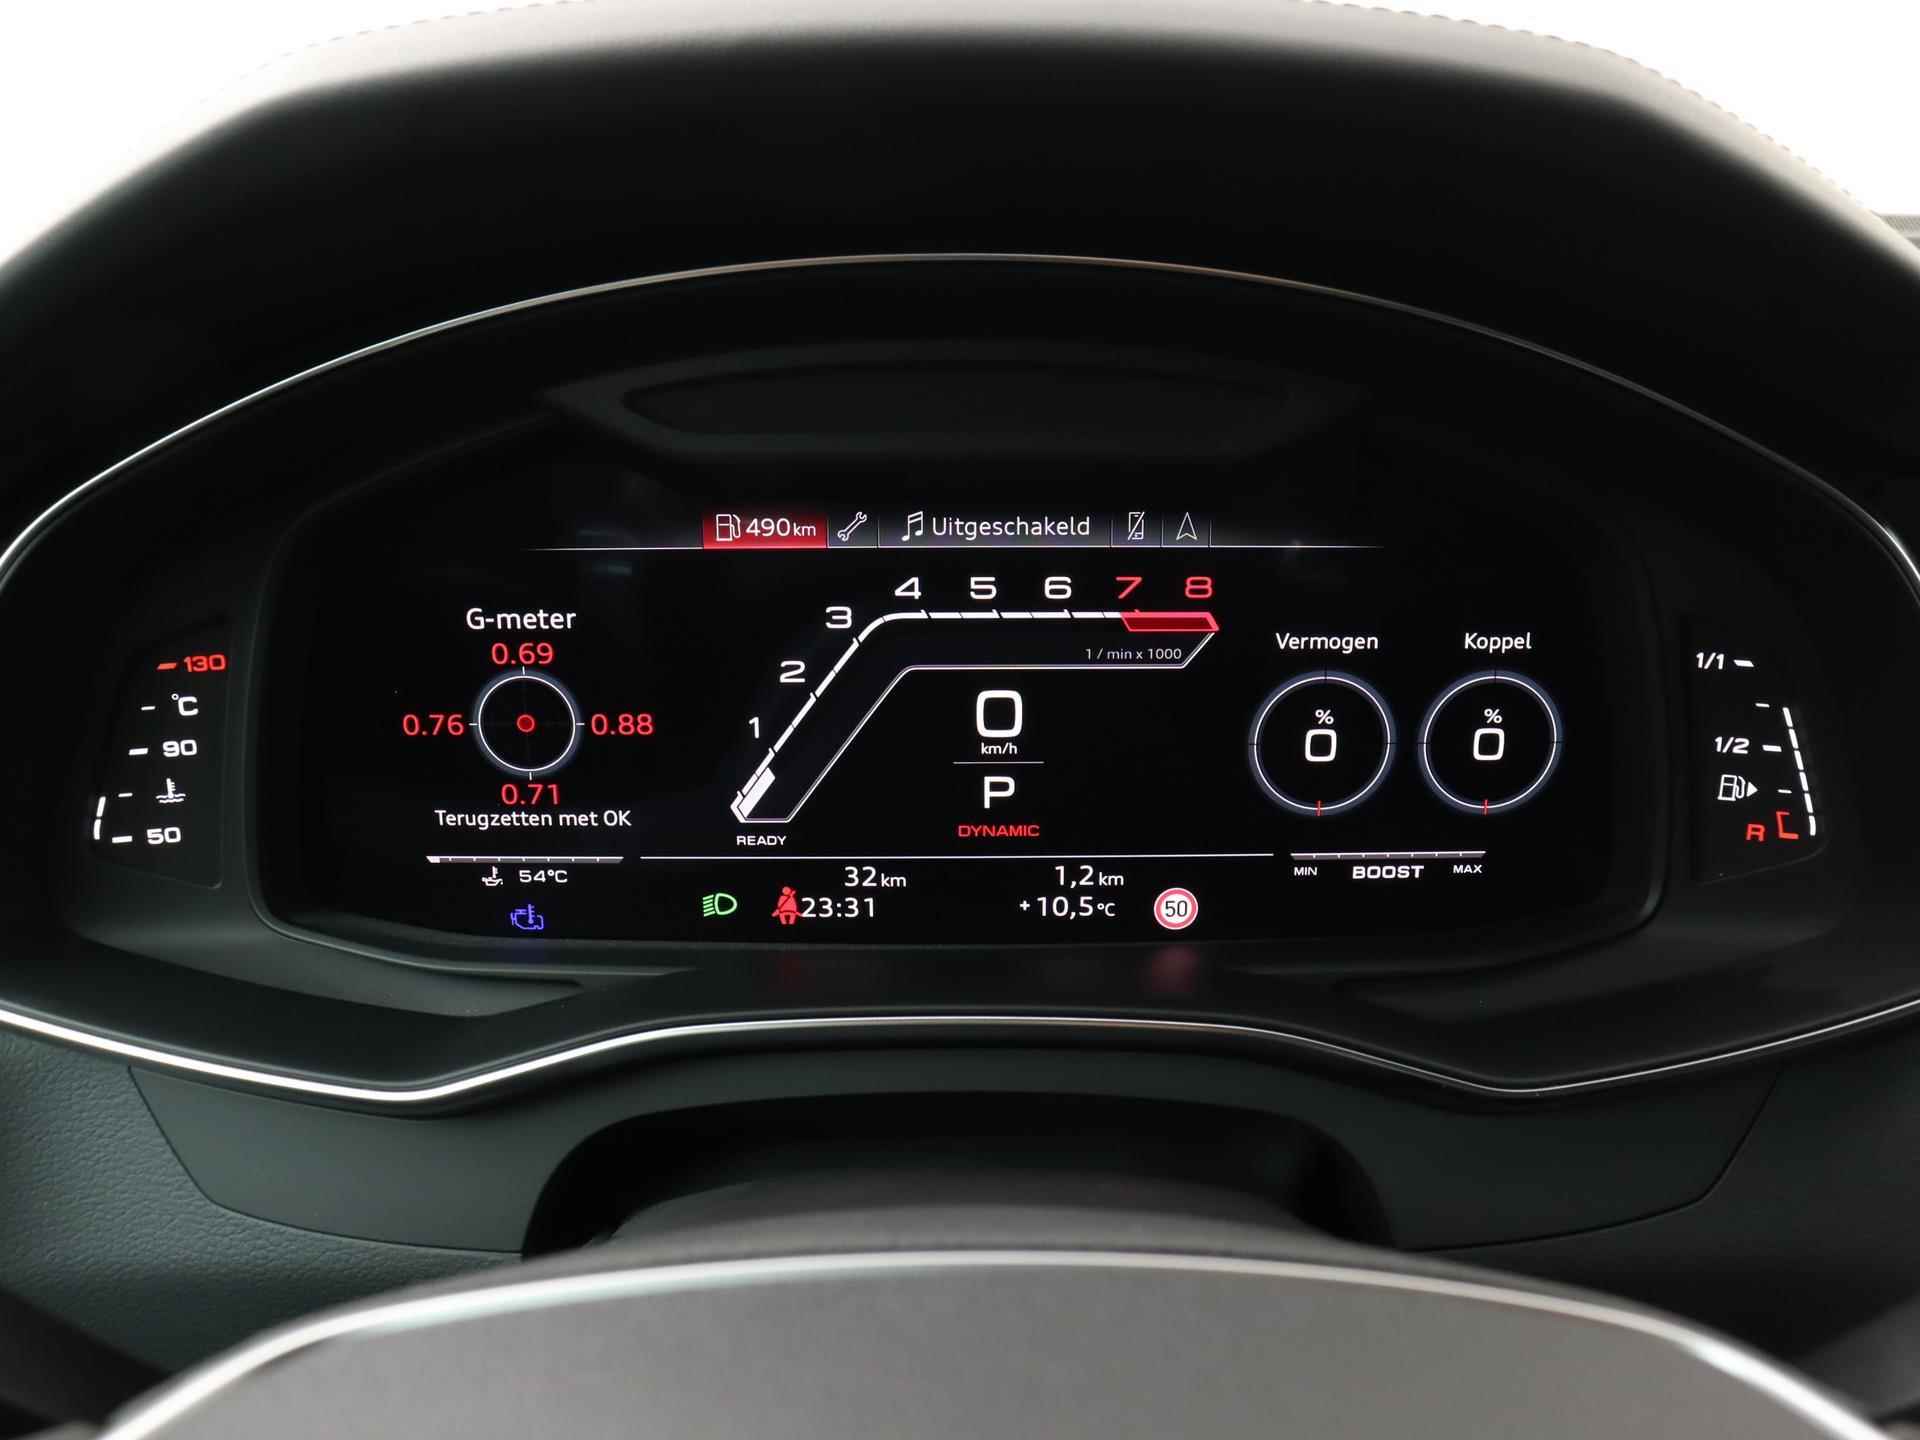 Audi RS 6 Avant TFSI quattro 600 PK | Head-up display | Bang & Olufsen Soundsystem | 22 inch lm velgen | RS Dynamic Pakket Plus | RS Design pakket Rood |Optiekpakket Zwart Plus | Panorama dak | RS Sportuitlaat | Keramische remschijven Rood | RS Sportonderstel Plus | Servosluiting deuren | Nu € 36.129,- ACTIEKORTING! | DIRECT LEVERBAAR! | - 3/35